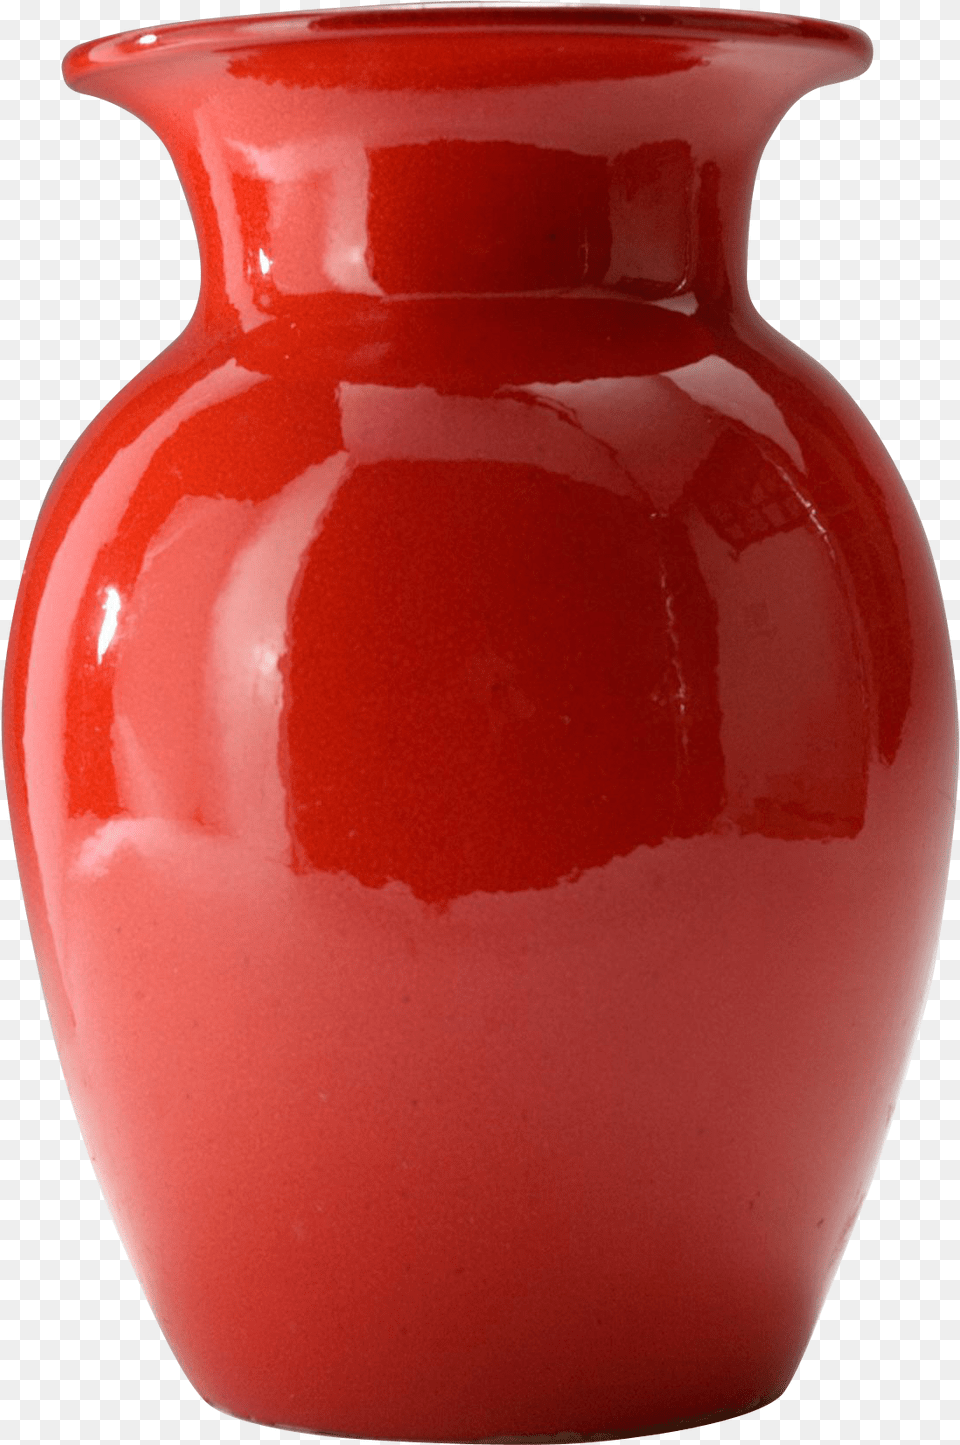 Pottery Empty Flower Vase, Jar, Food, Ketchup Free Transparent Png